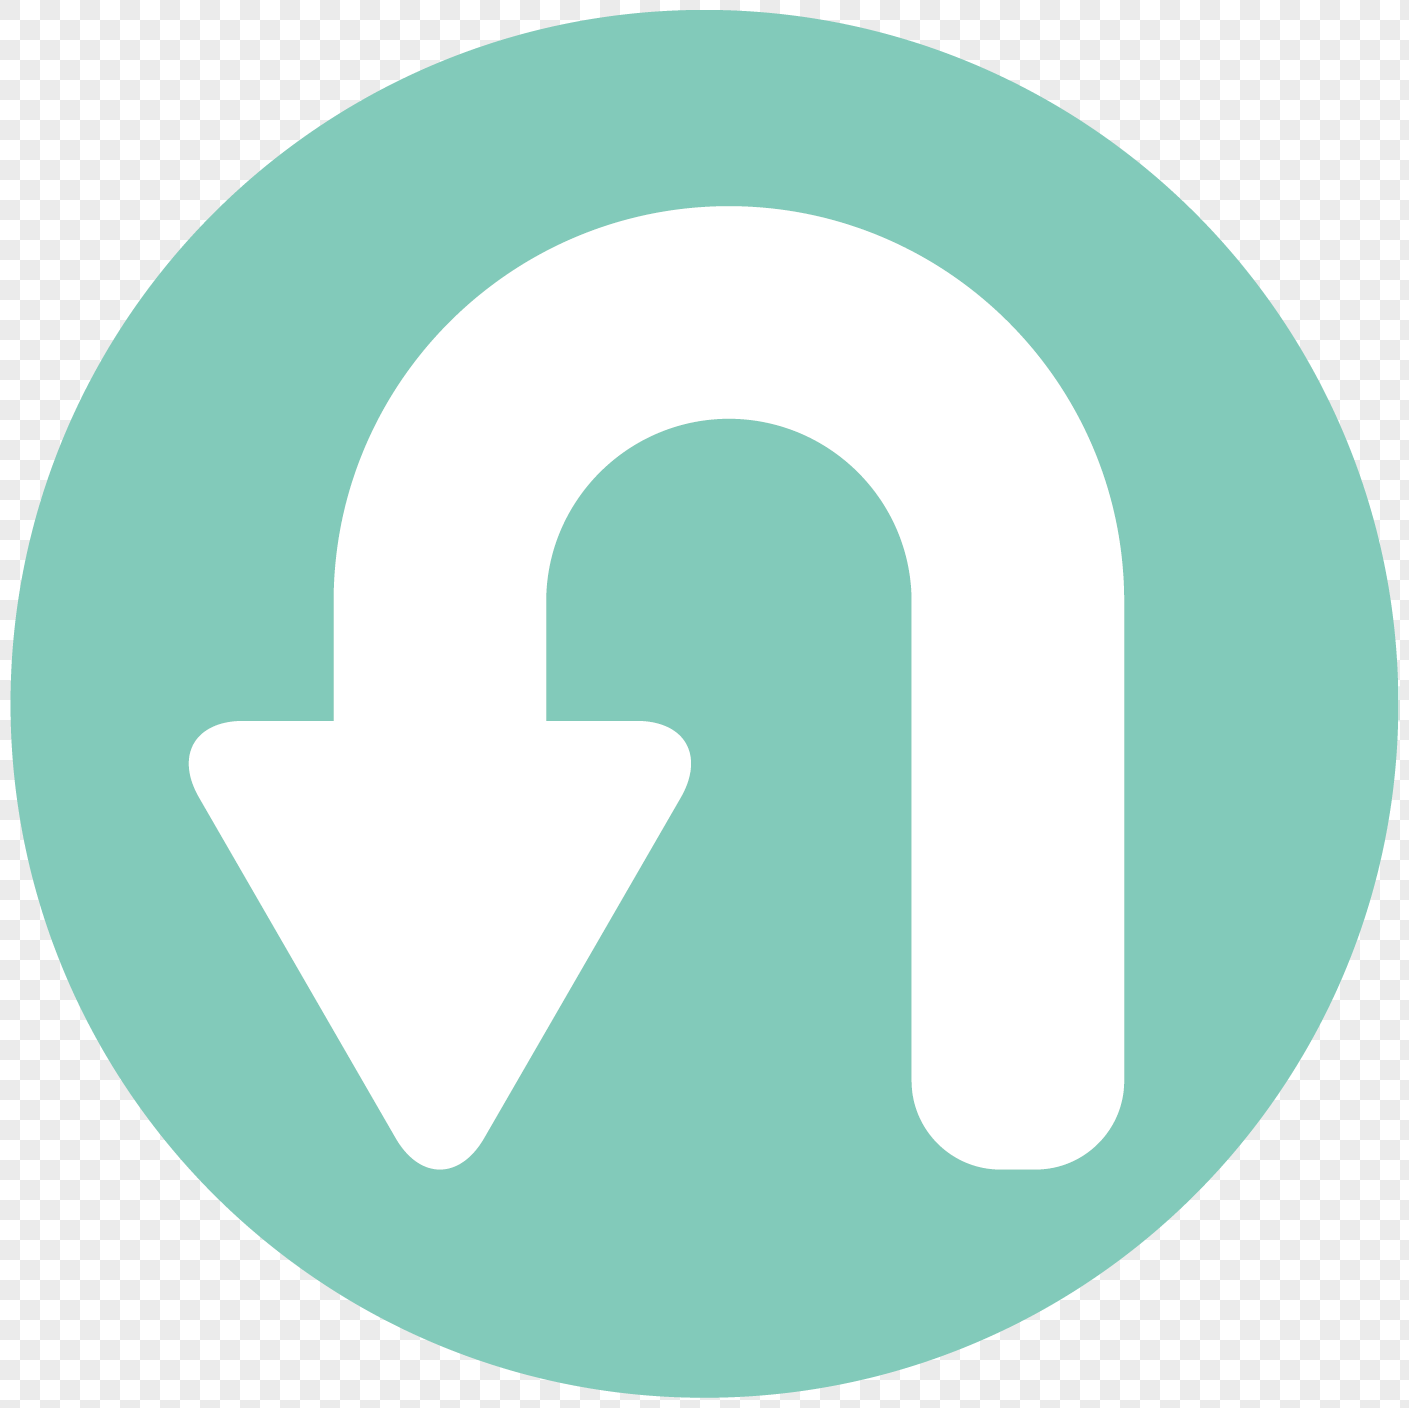 White Curved Arrow Logo - Green circular bottom white curved arrow arrow arrow vector elem png ...